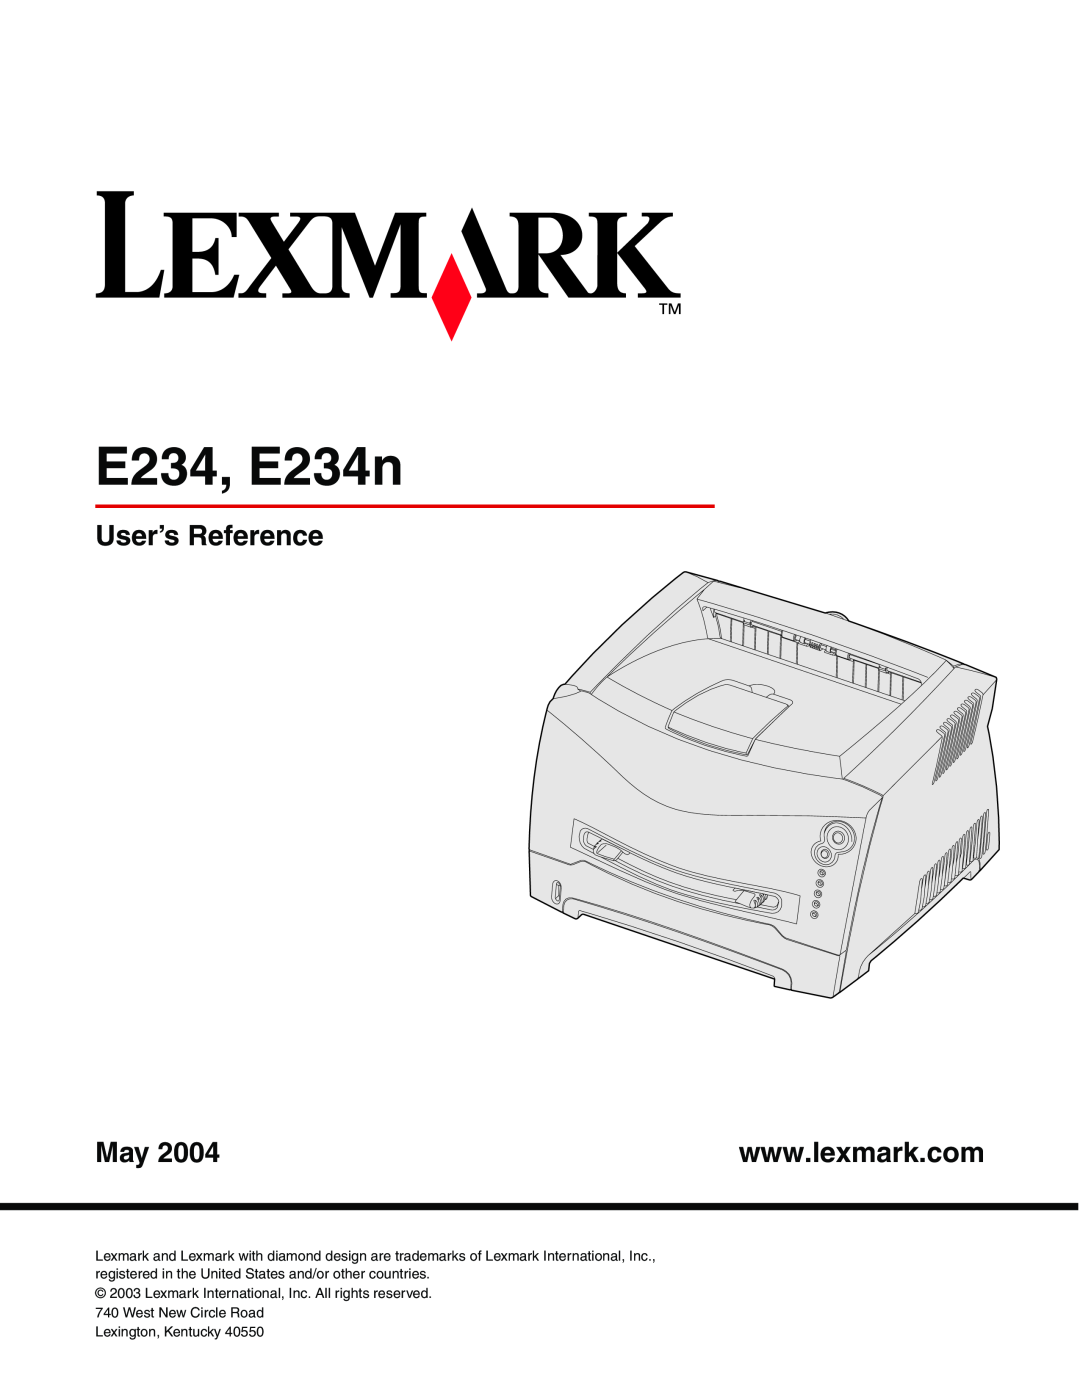 Lexmark E234N manual E234, E234n, User’s Reference 